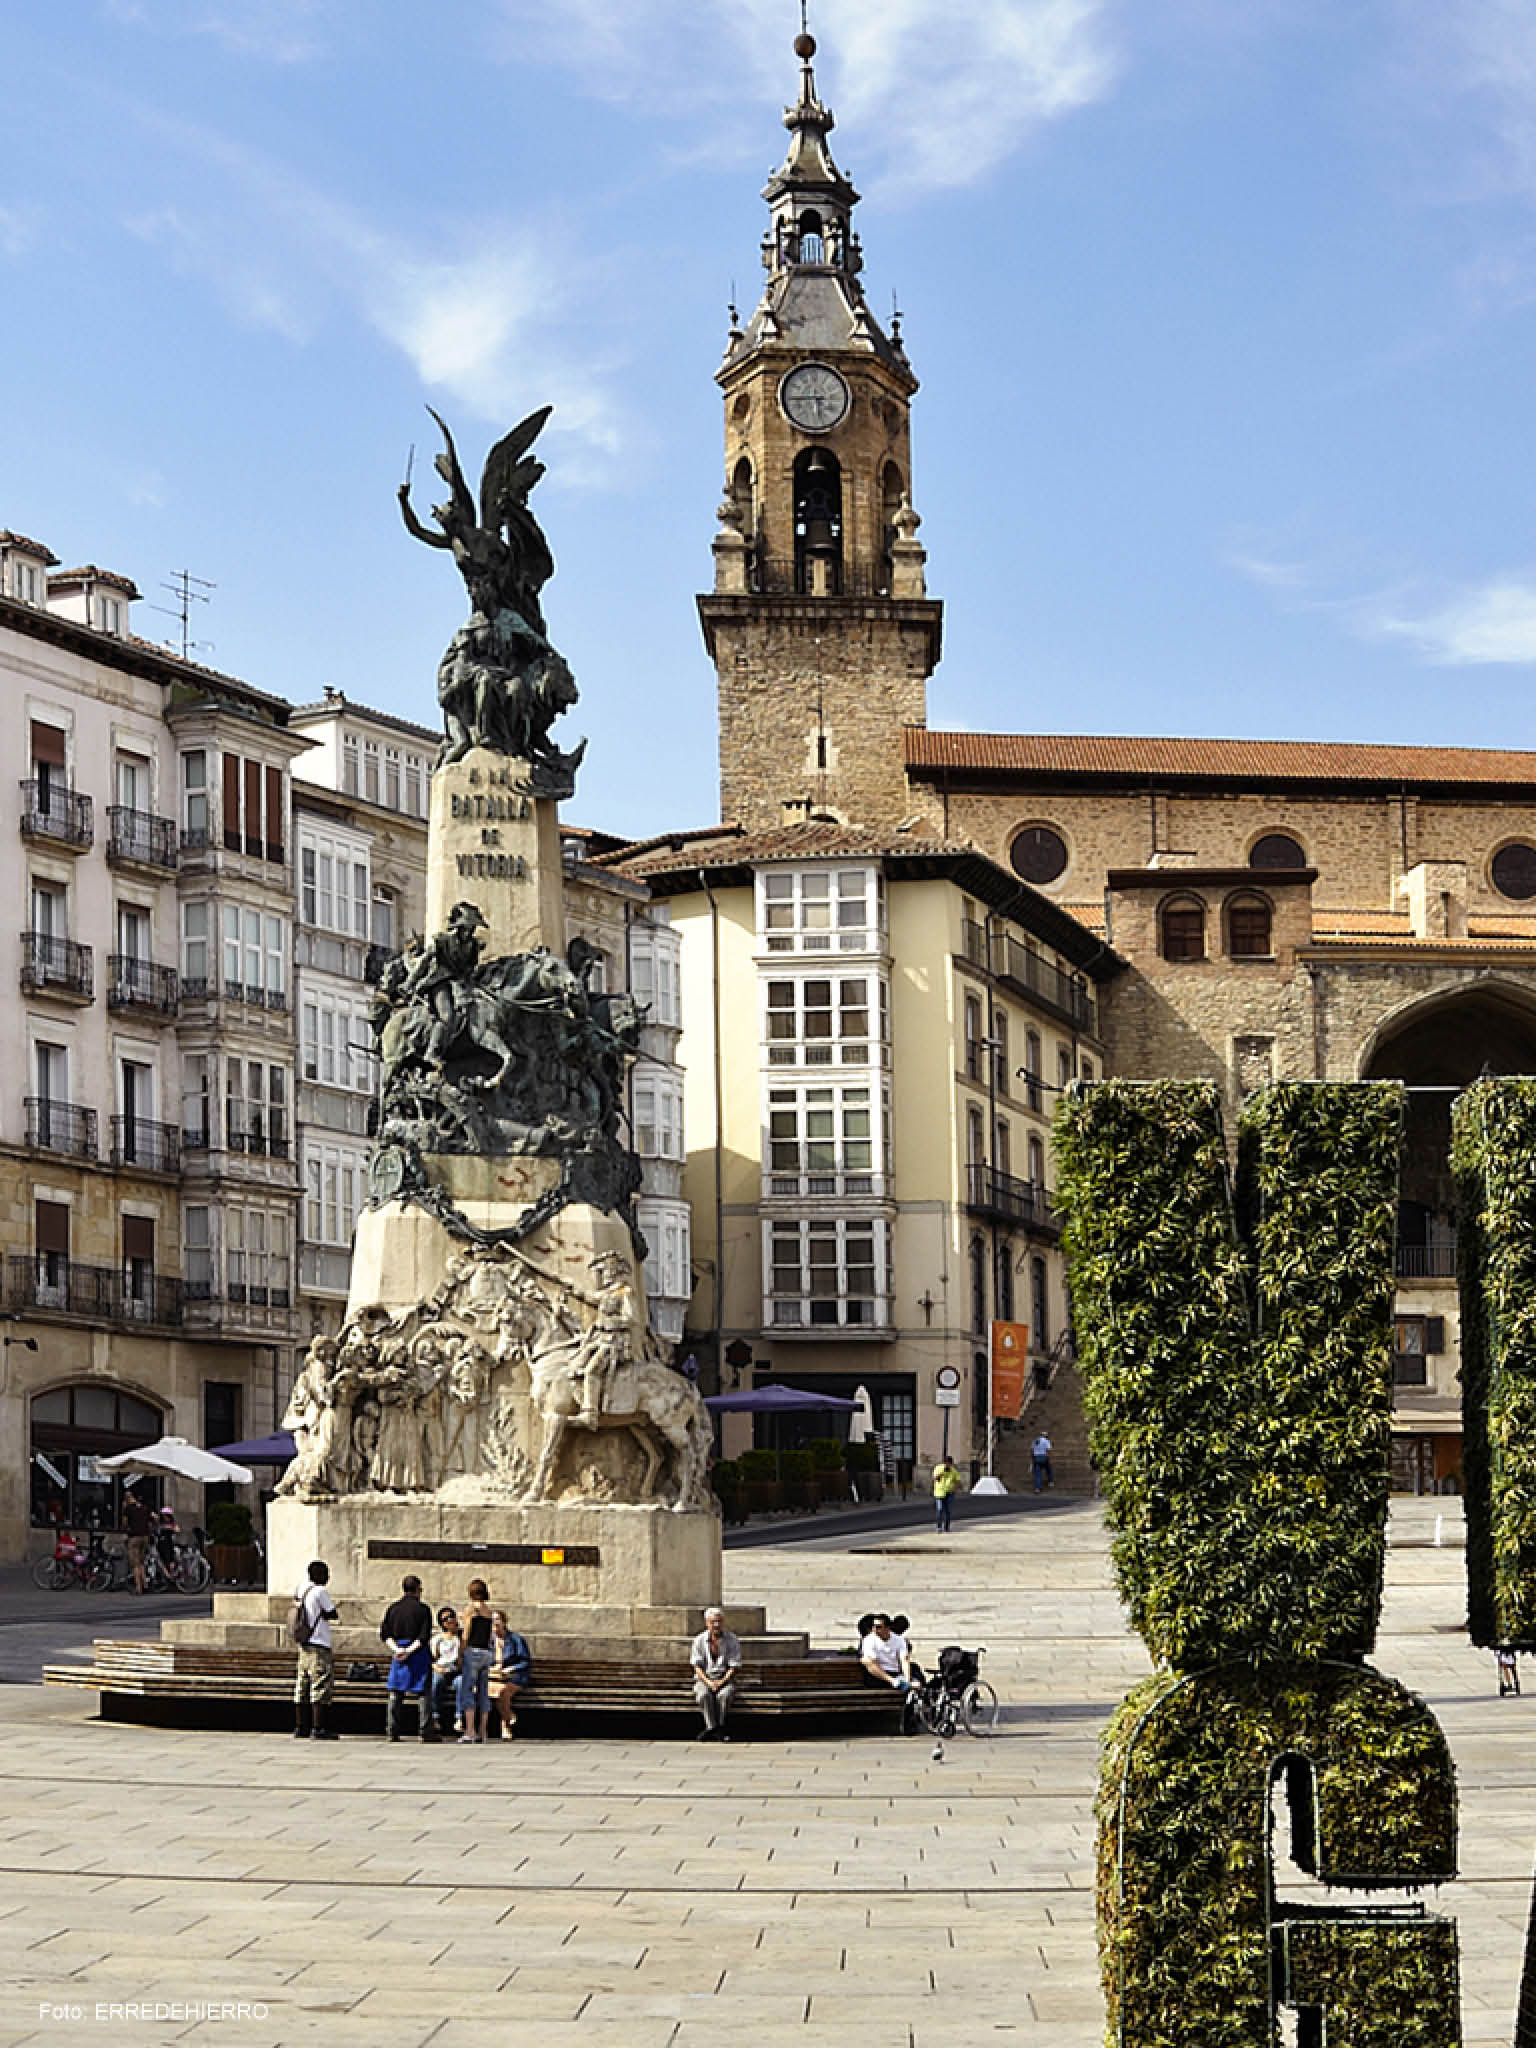 New San Mames, Bilbao, Bizkaia, Basque Country, Spain